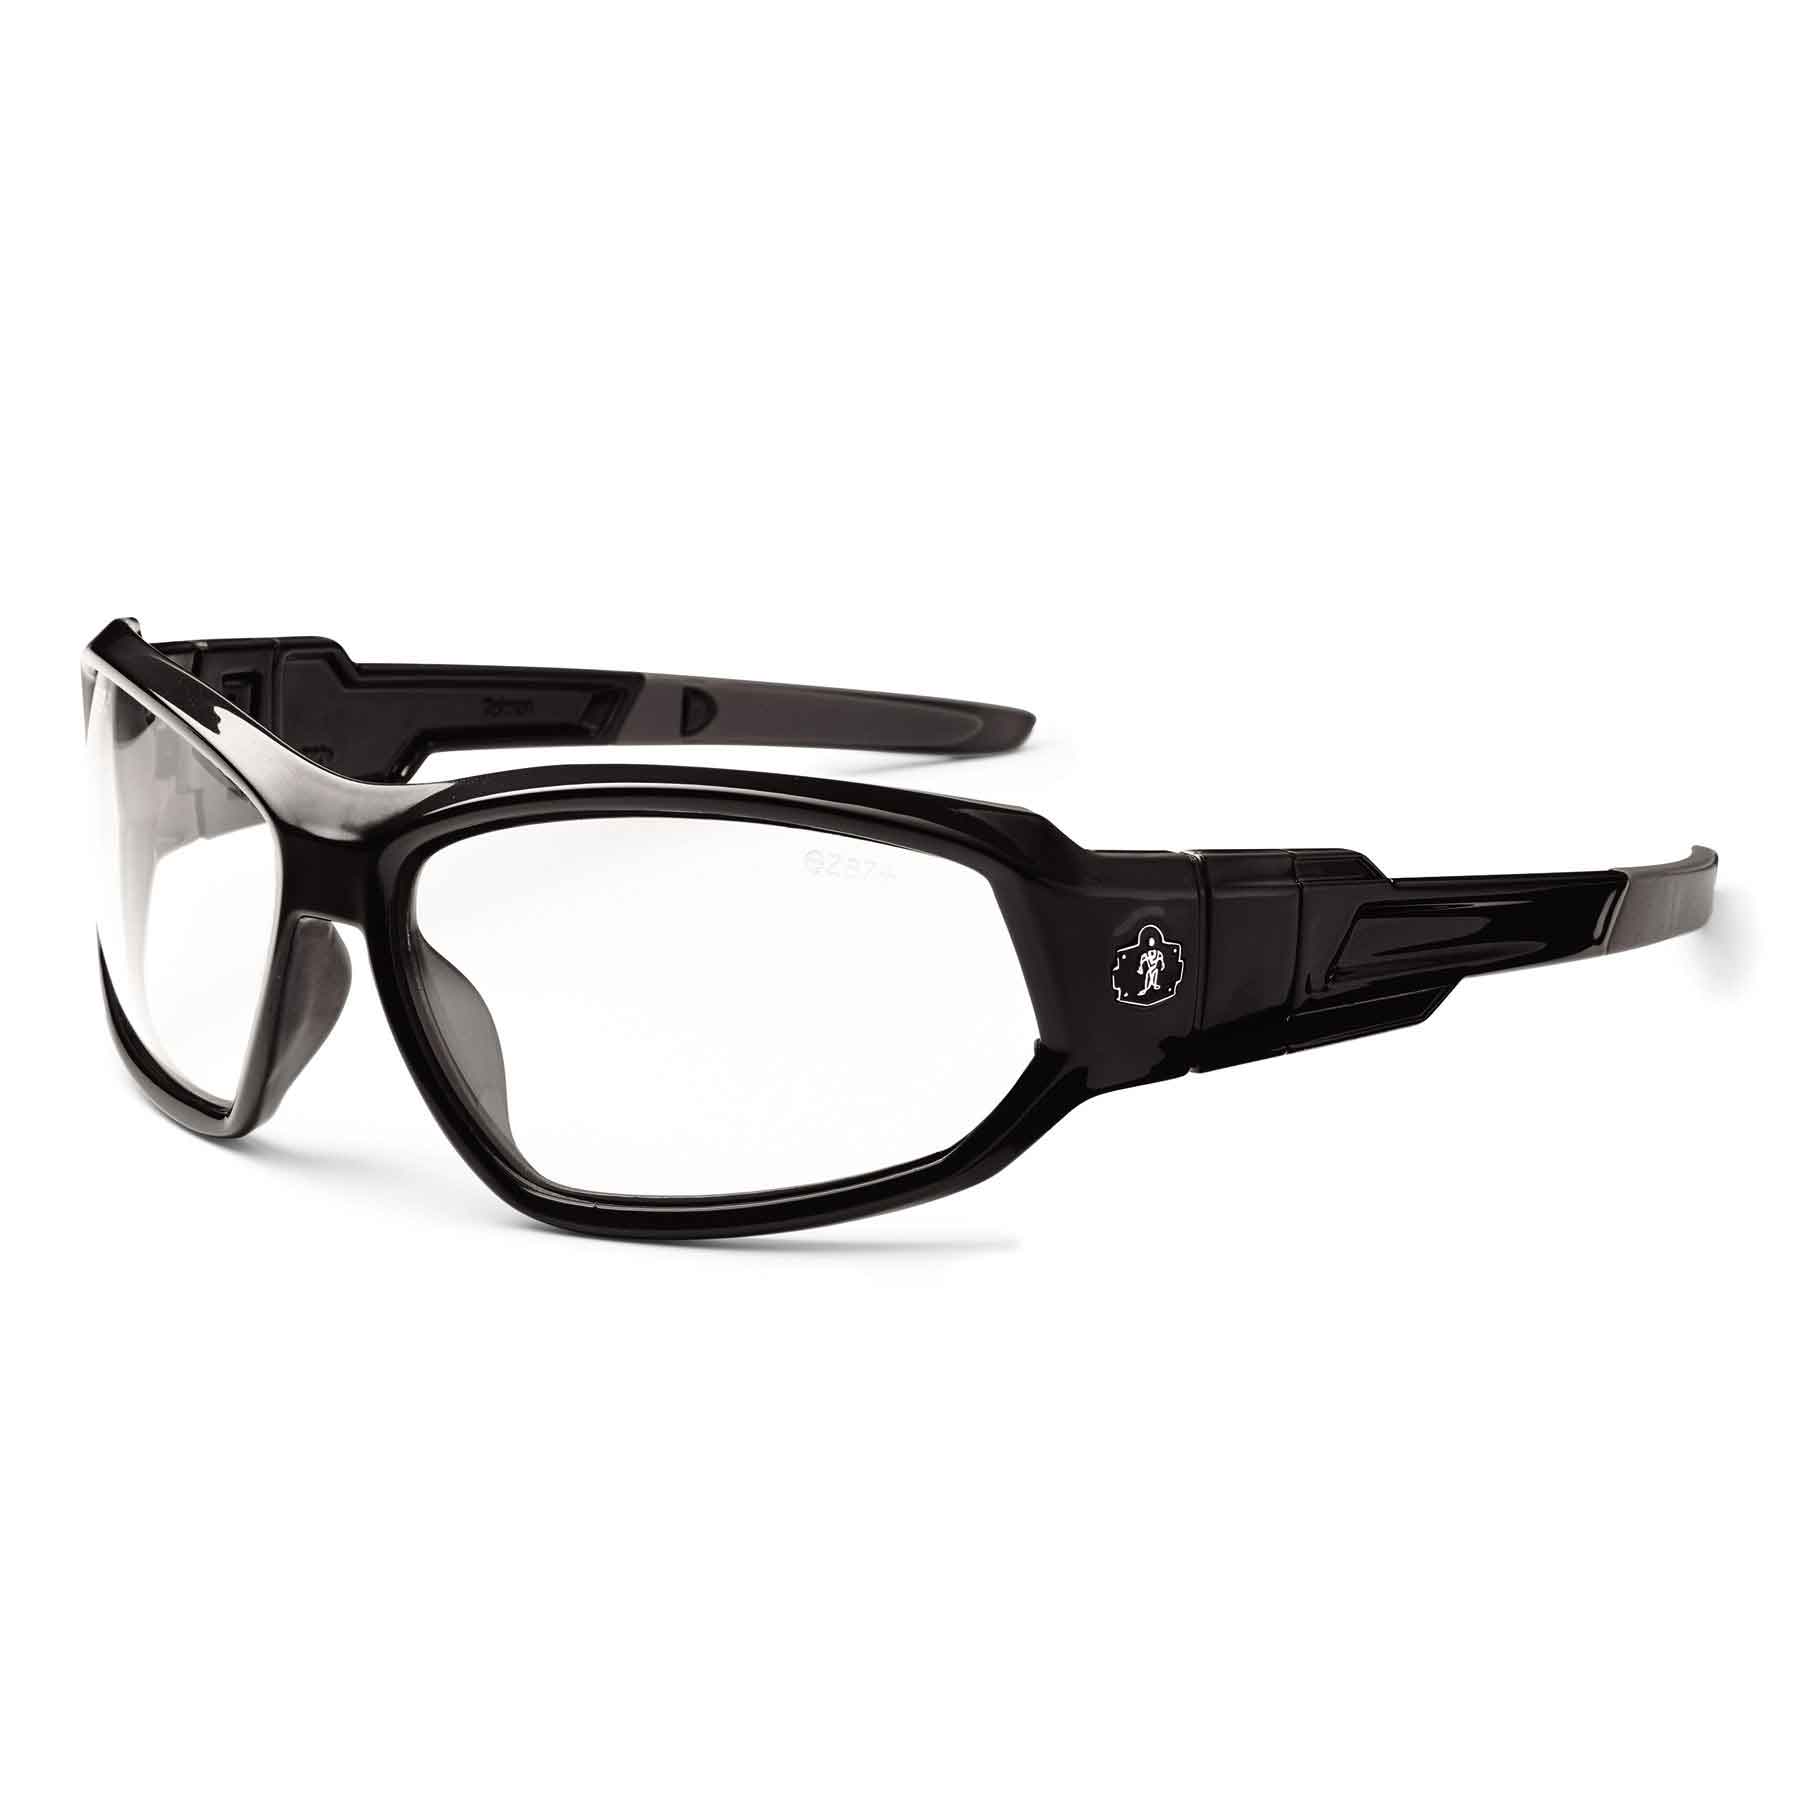 Details about   Ergodyne Safety Glasses Clear Lens Scratch Resistant Full Frame Work Matte Black 